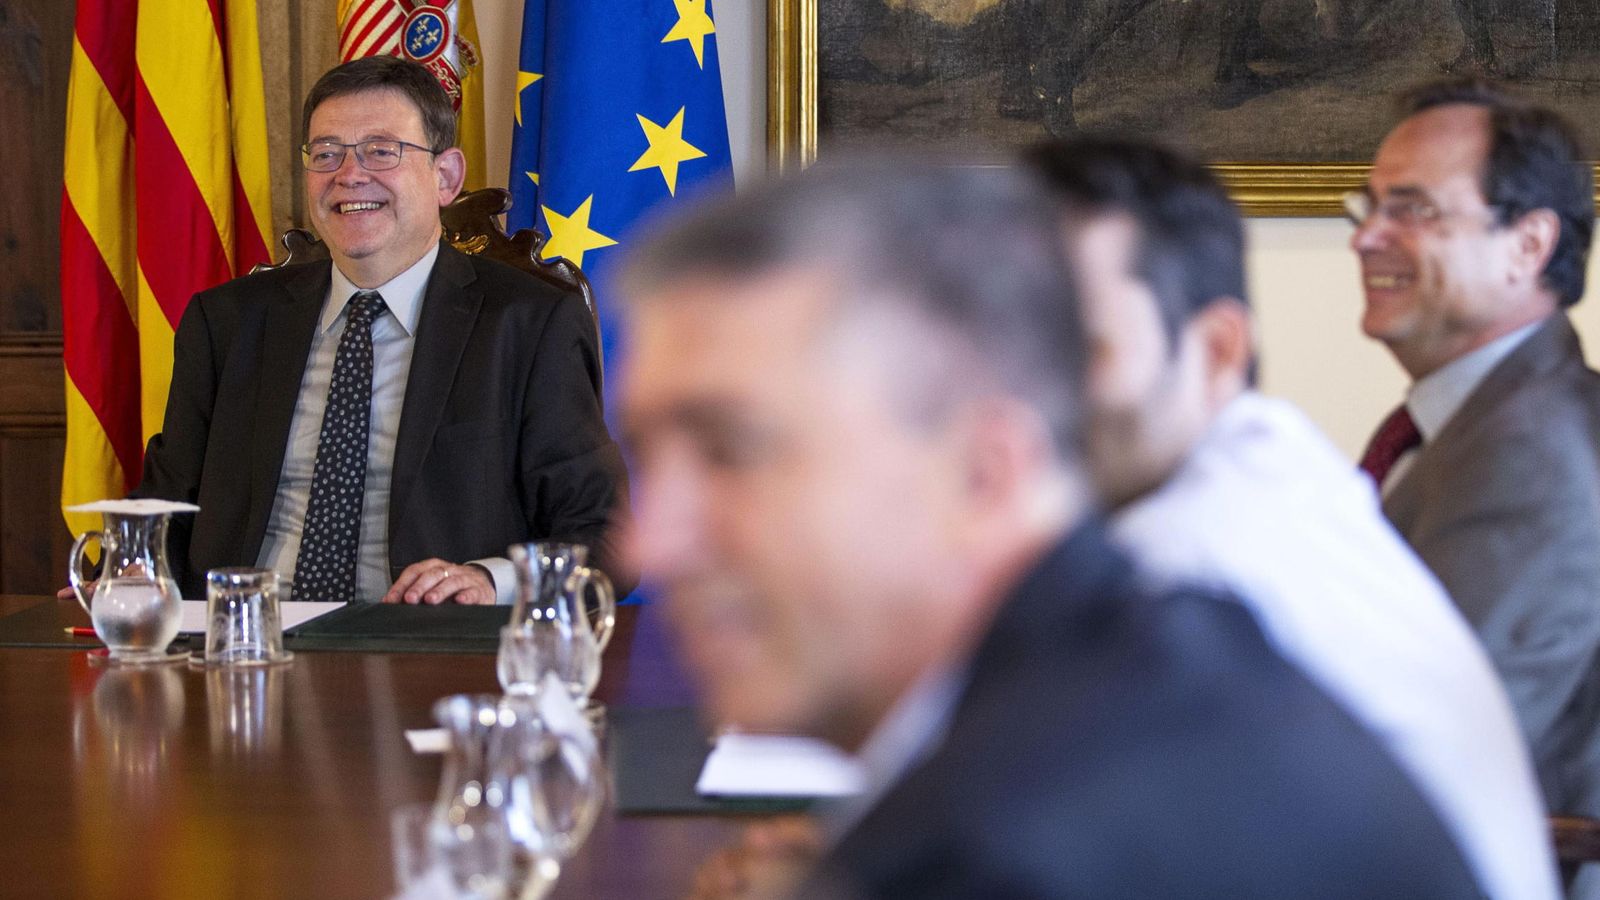 Foto: El presidente de la Generalitat, Ximo Puig. (EFE)